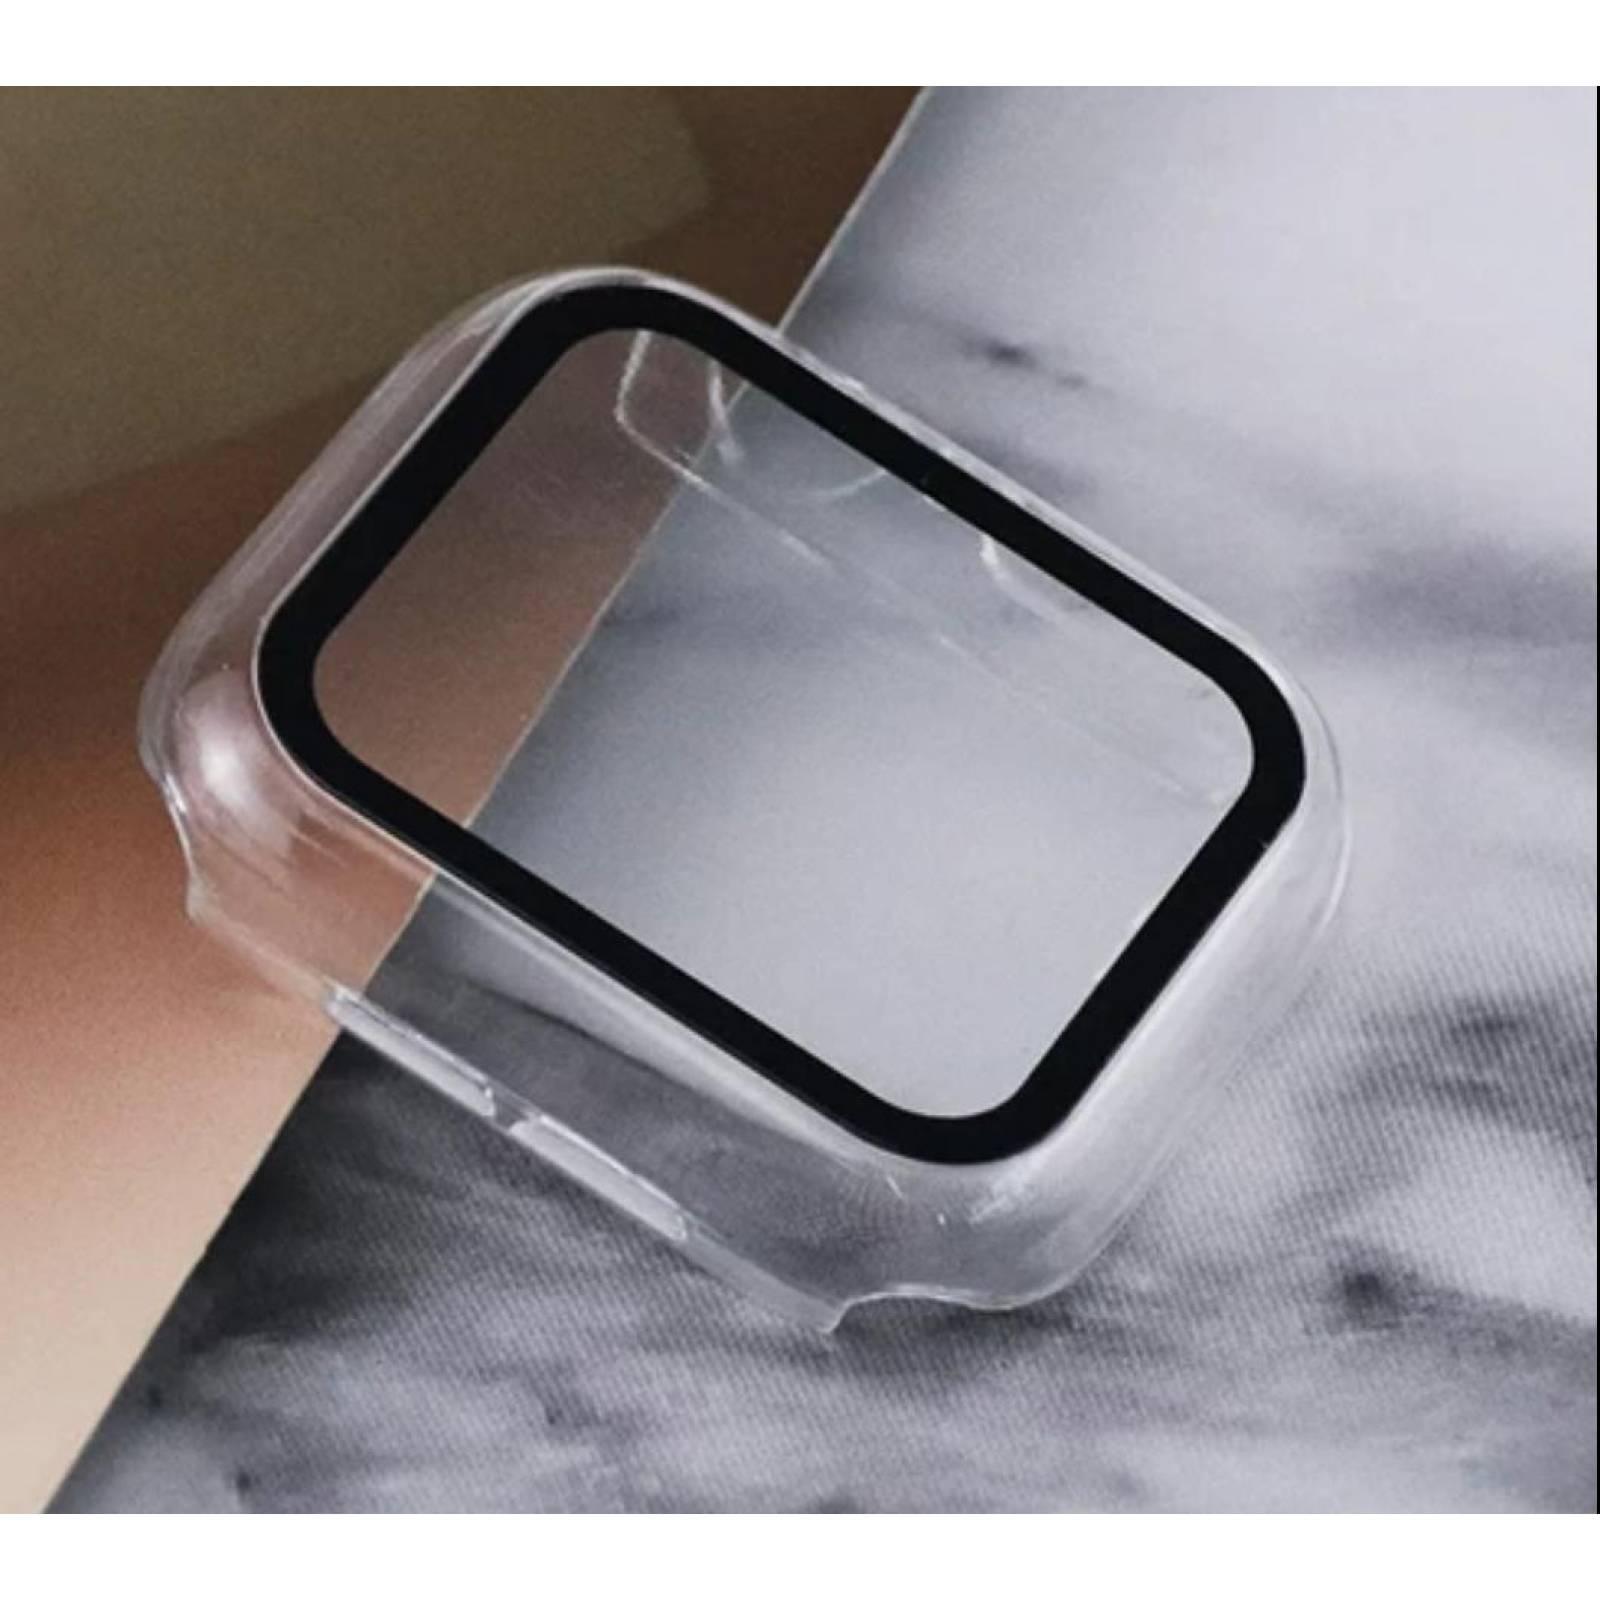 Funda con cristal templado para Apple Watch 38MM TRANSPARENTE